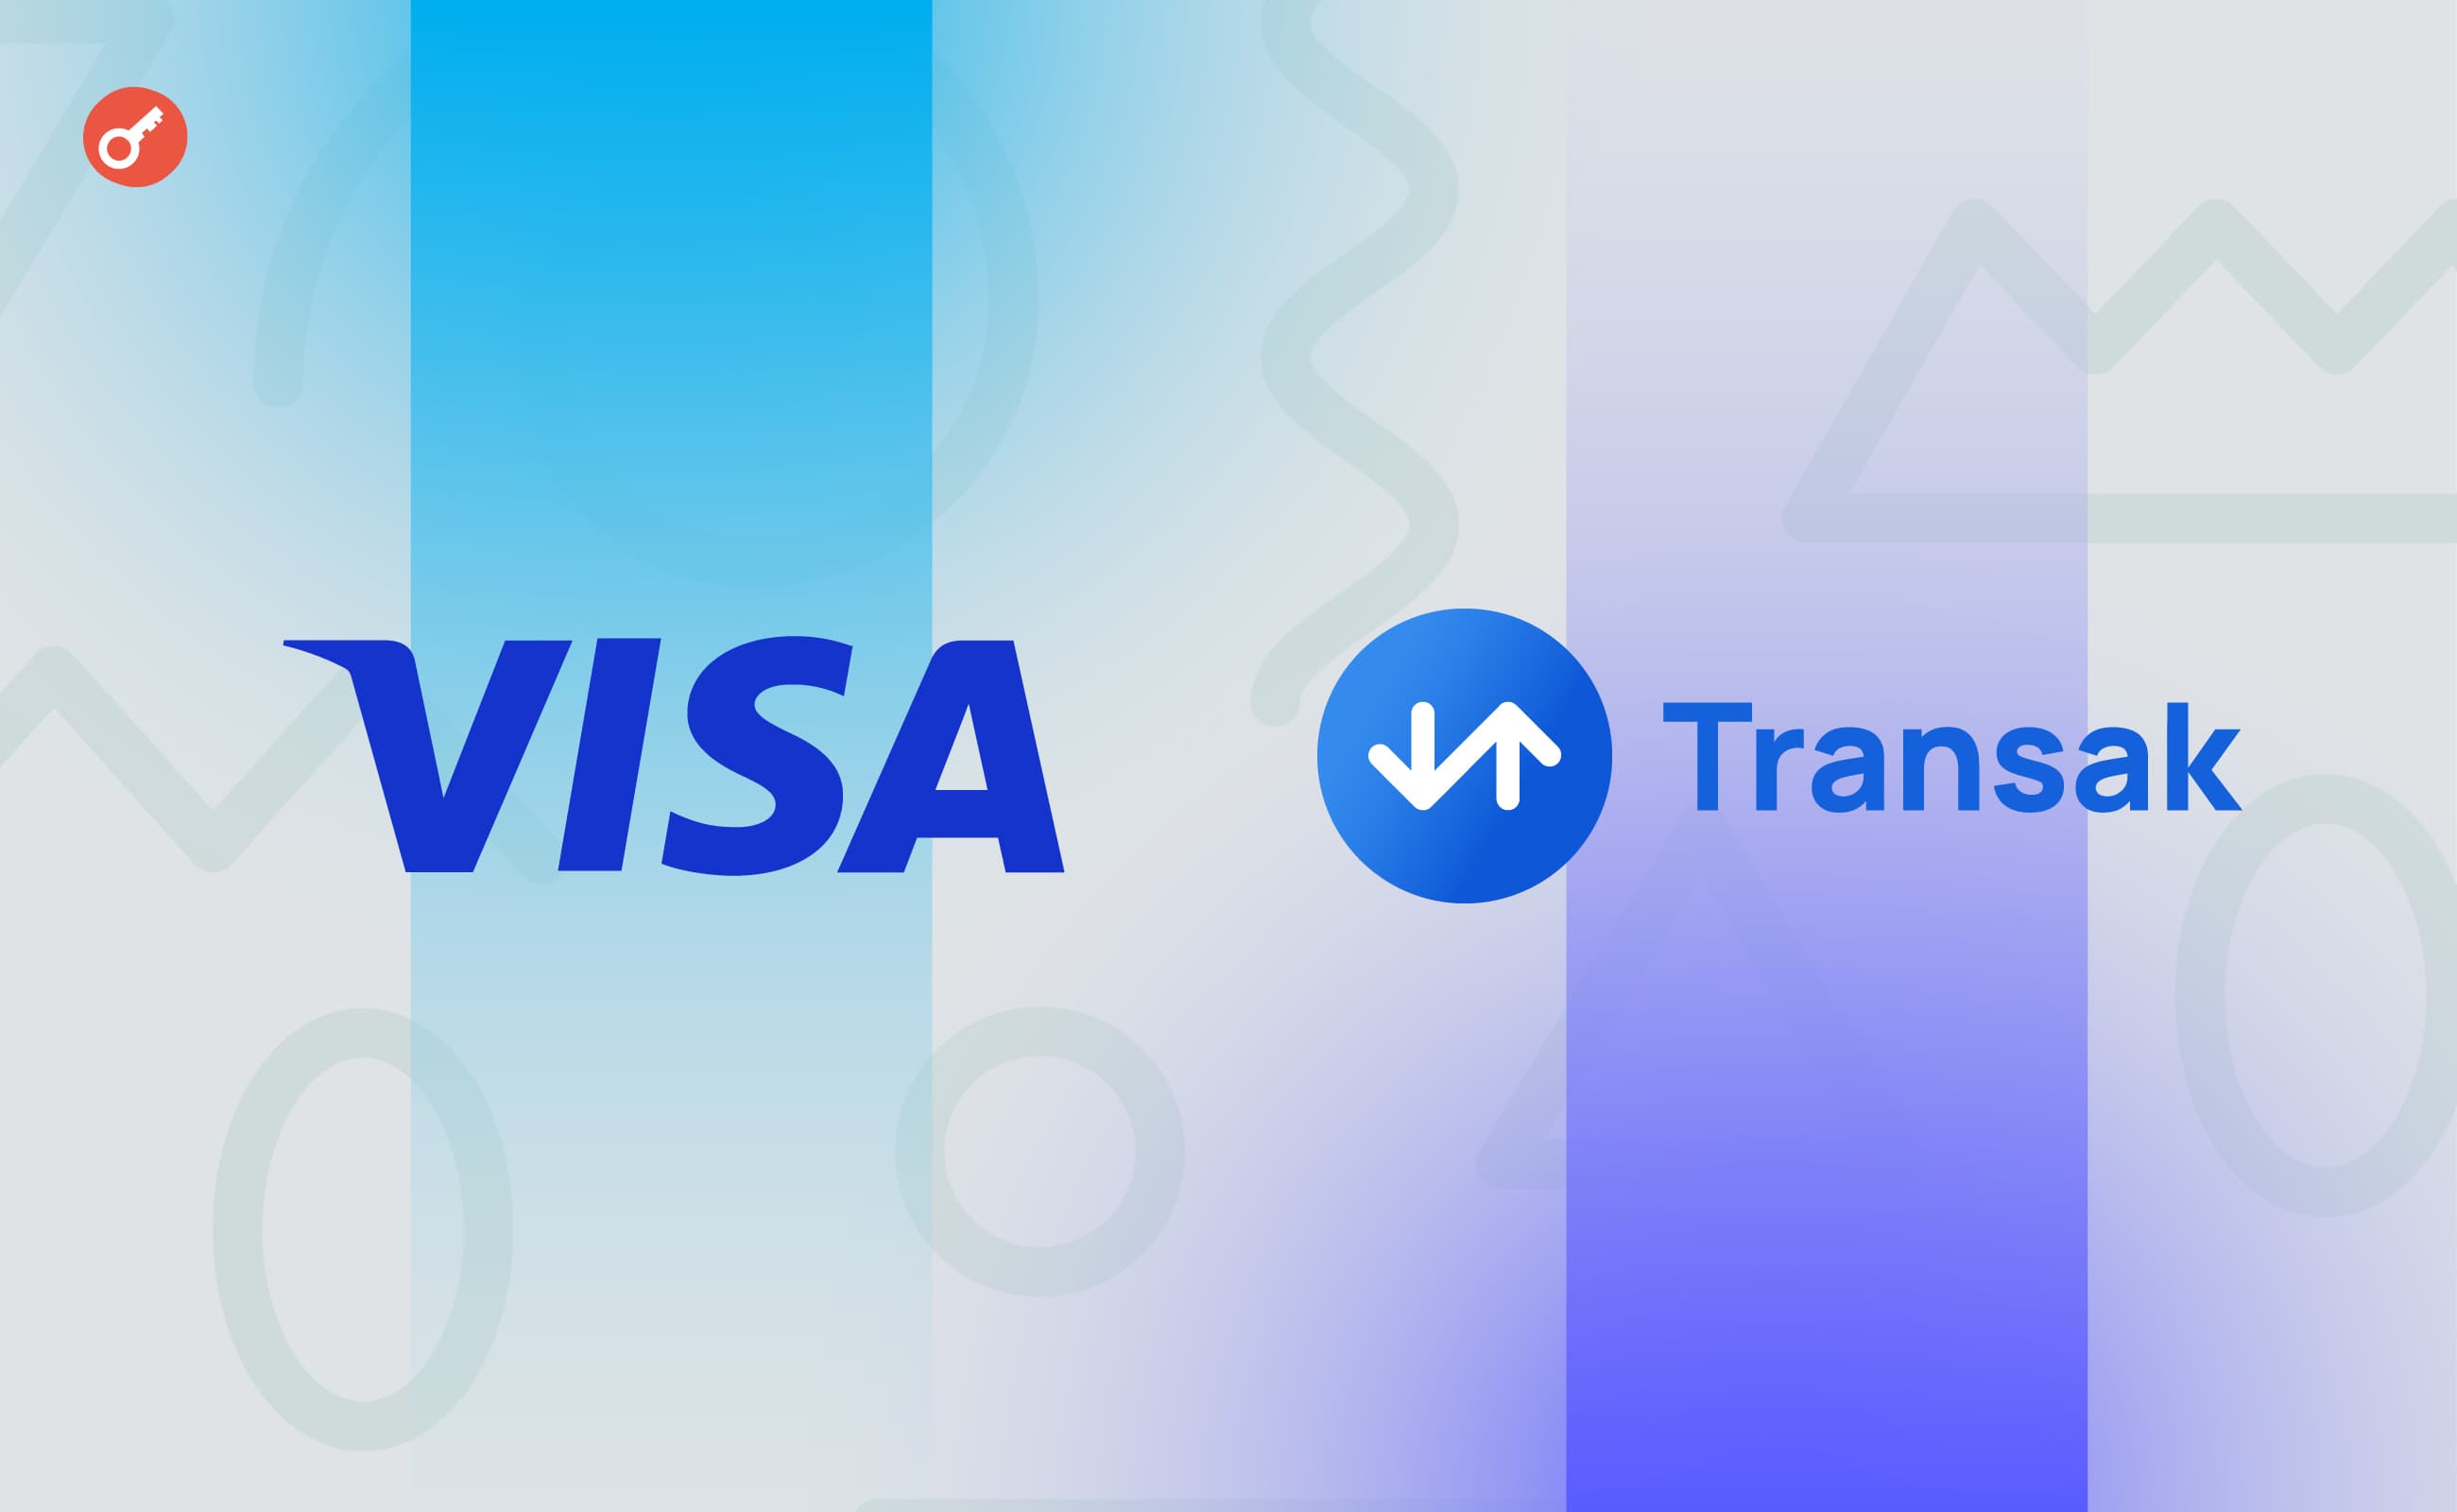 Transak уклала партнерство з Visa для конвертації криптовалют у фіат. Головний колаж новини.